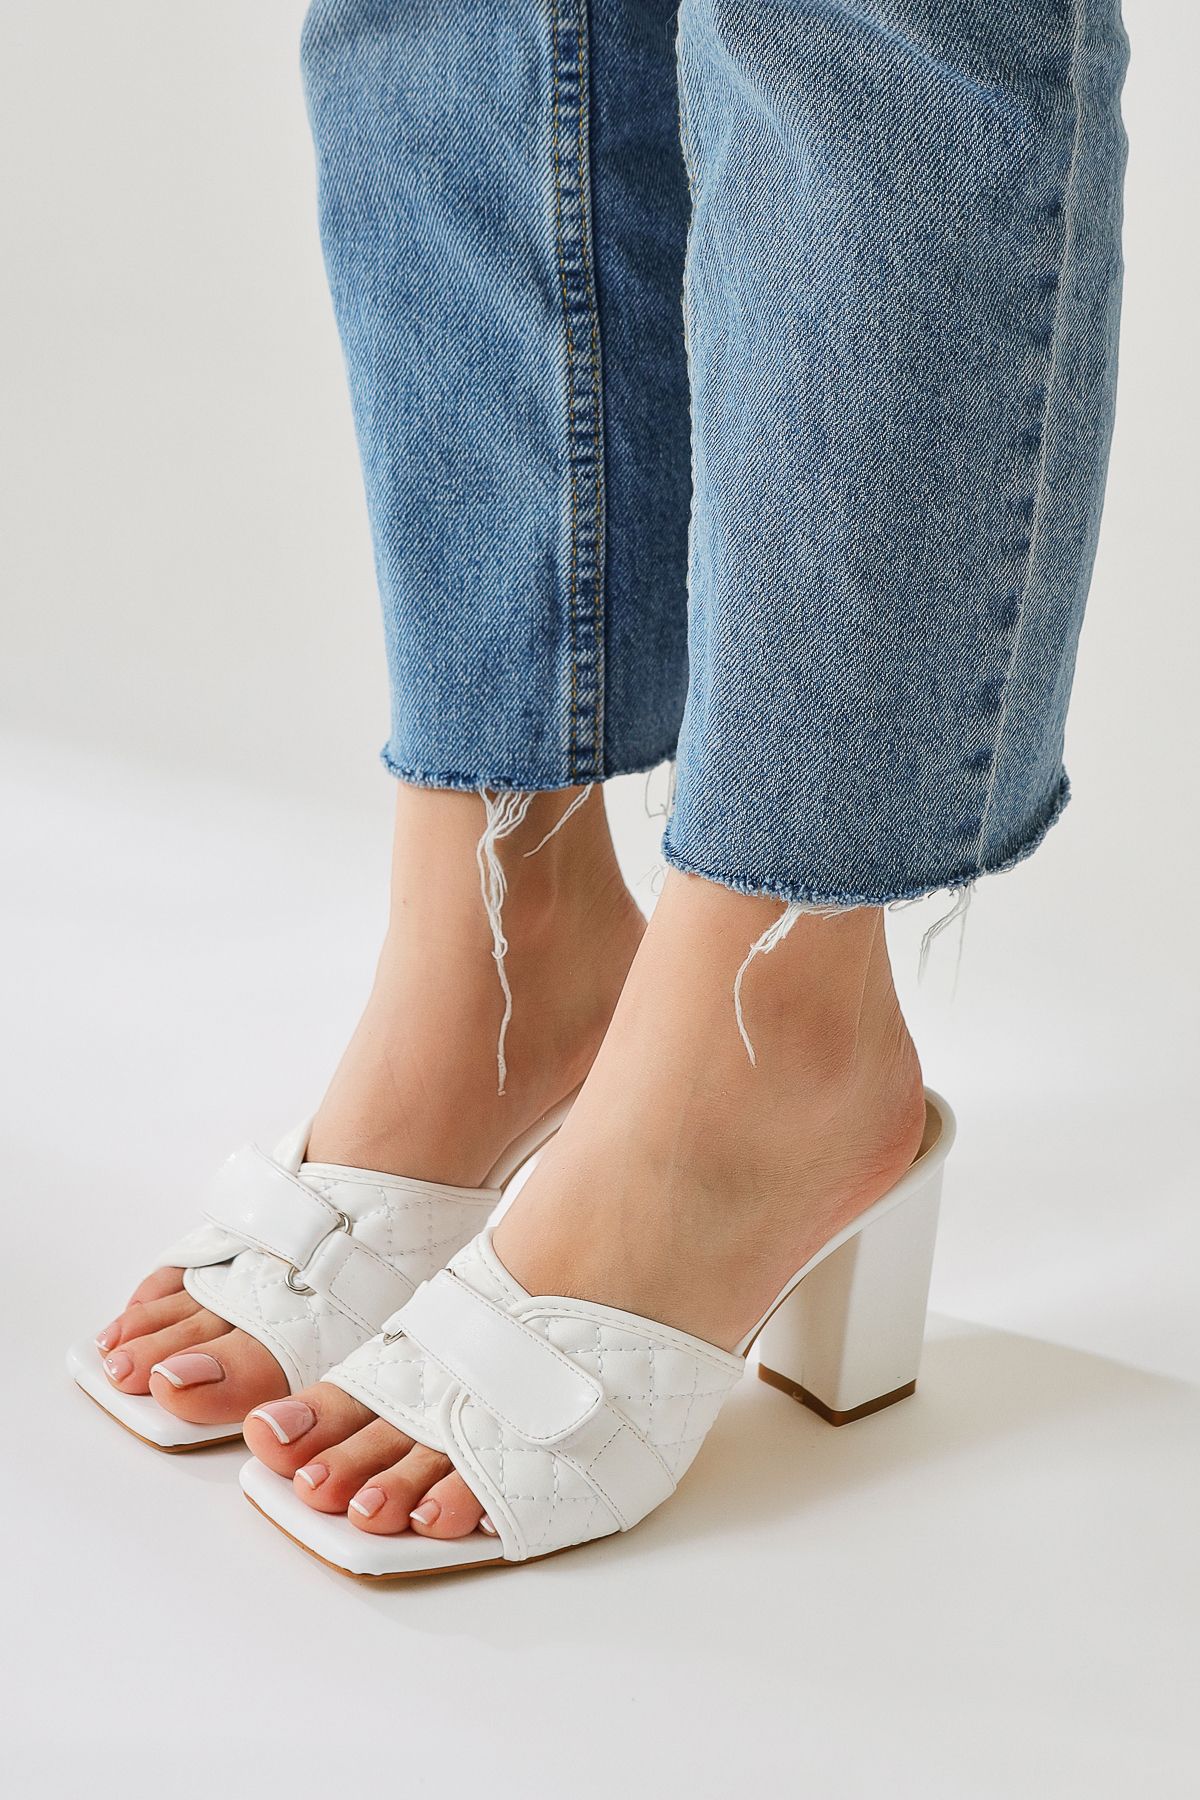 Limoya Prisha Beyaz Çıtçıt Detaylı Desenli Topuklu Ayakkabı